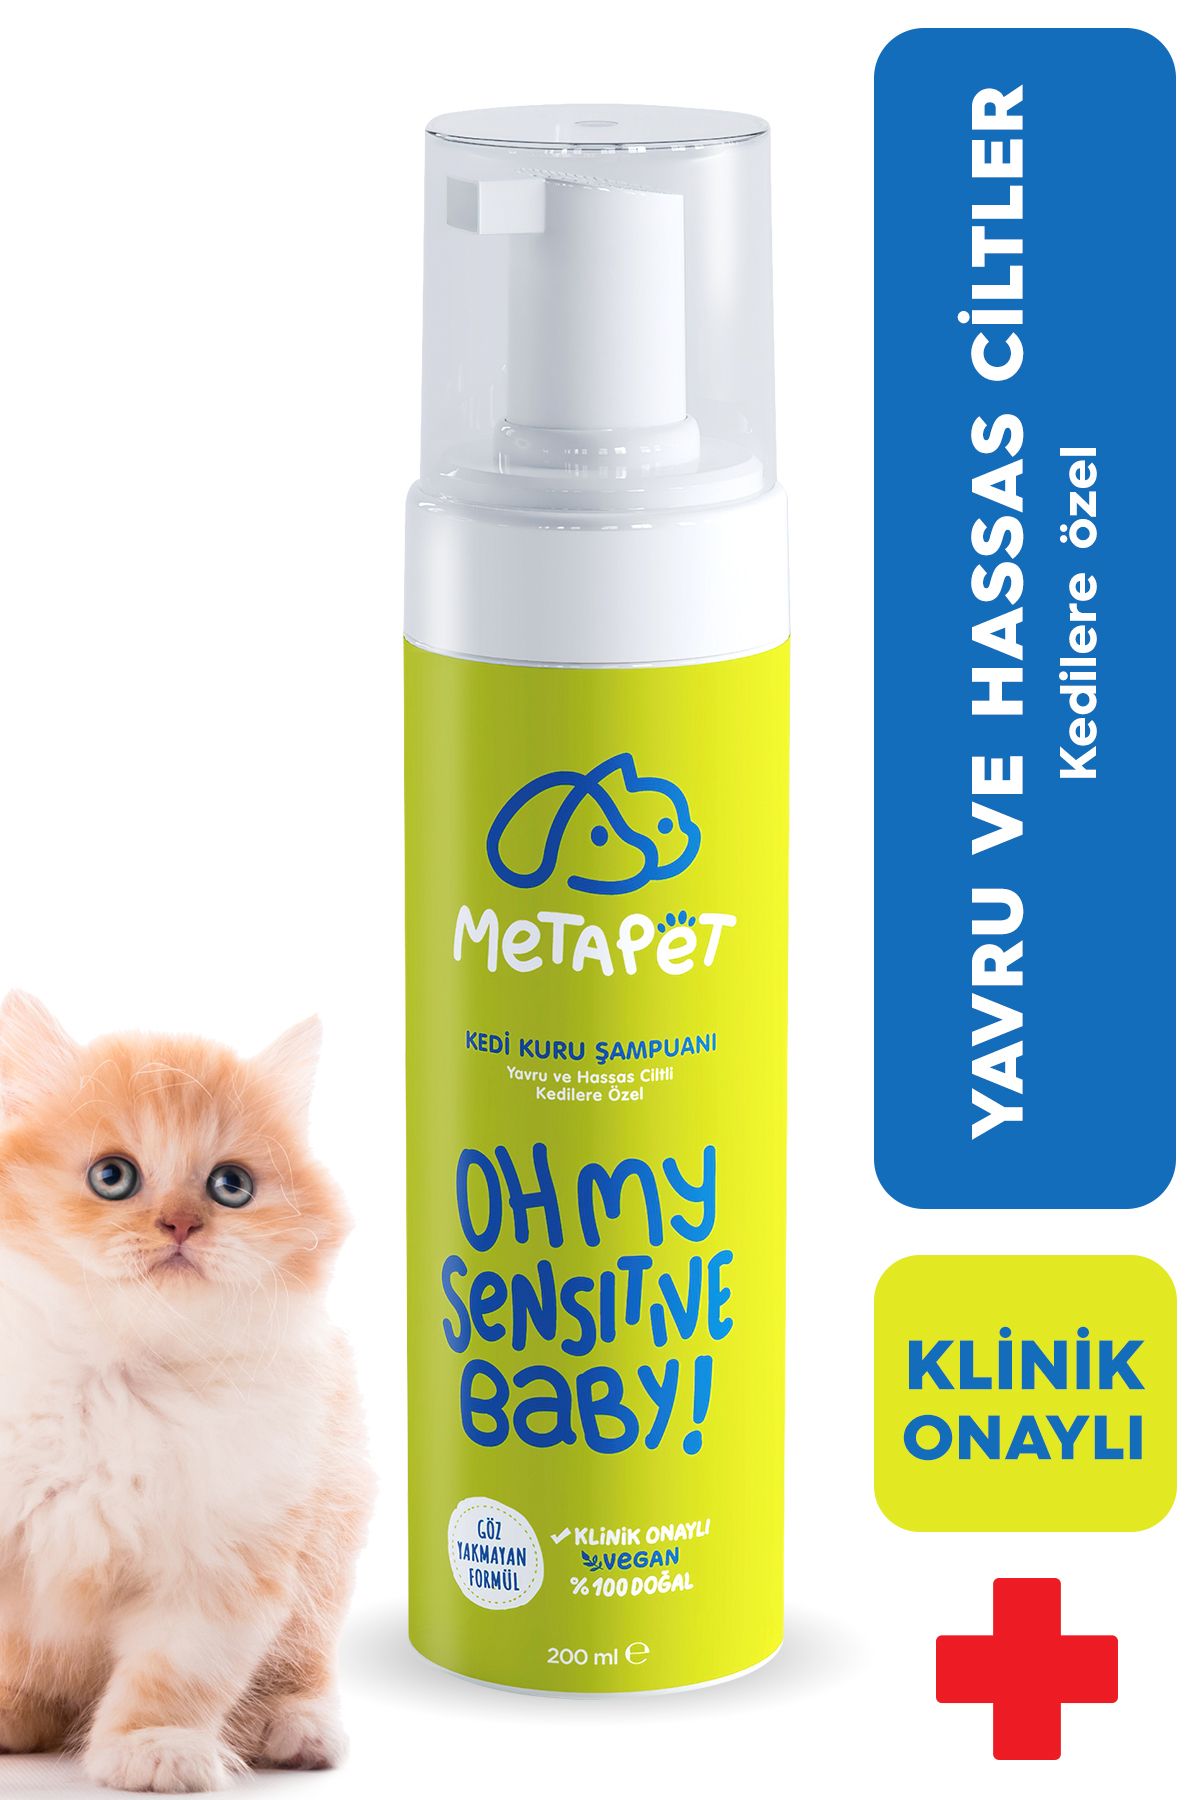 Metapet Yavru Kediler Için Kuru Şampuan, Doğal Tüy Bakım Ürünü, Durulanmayan Susuz Köpük Yıkama